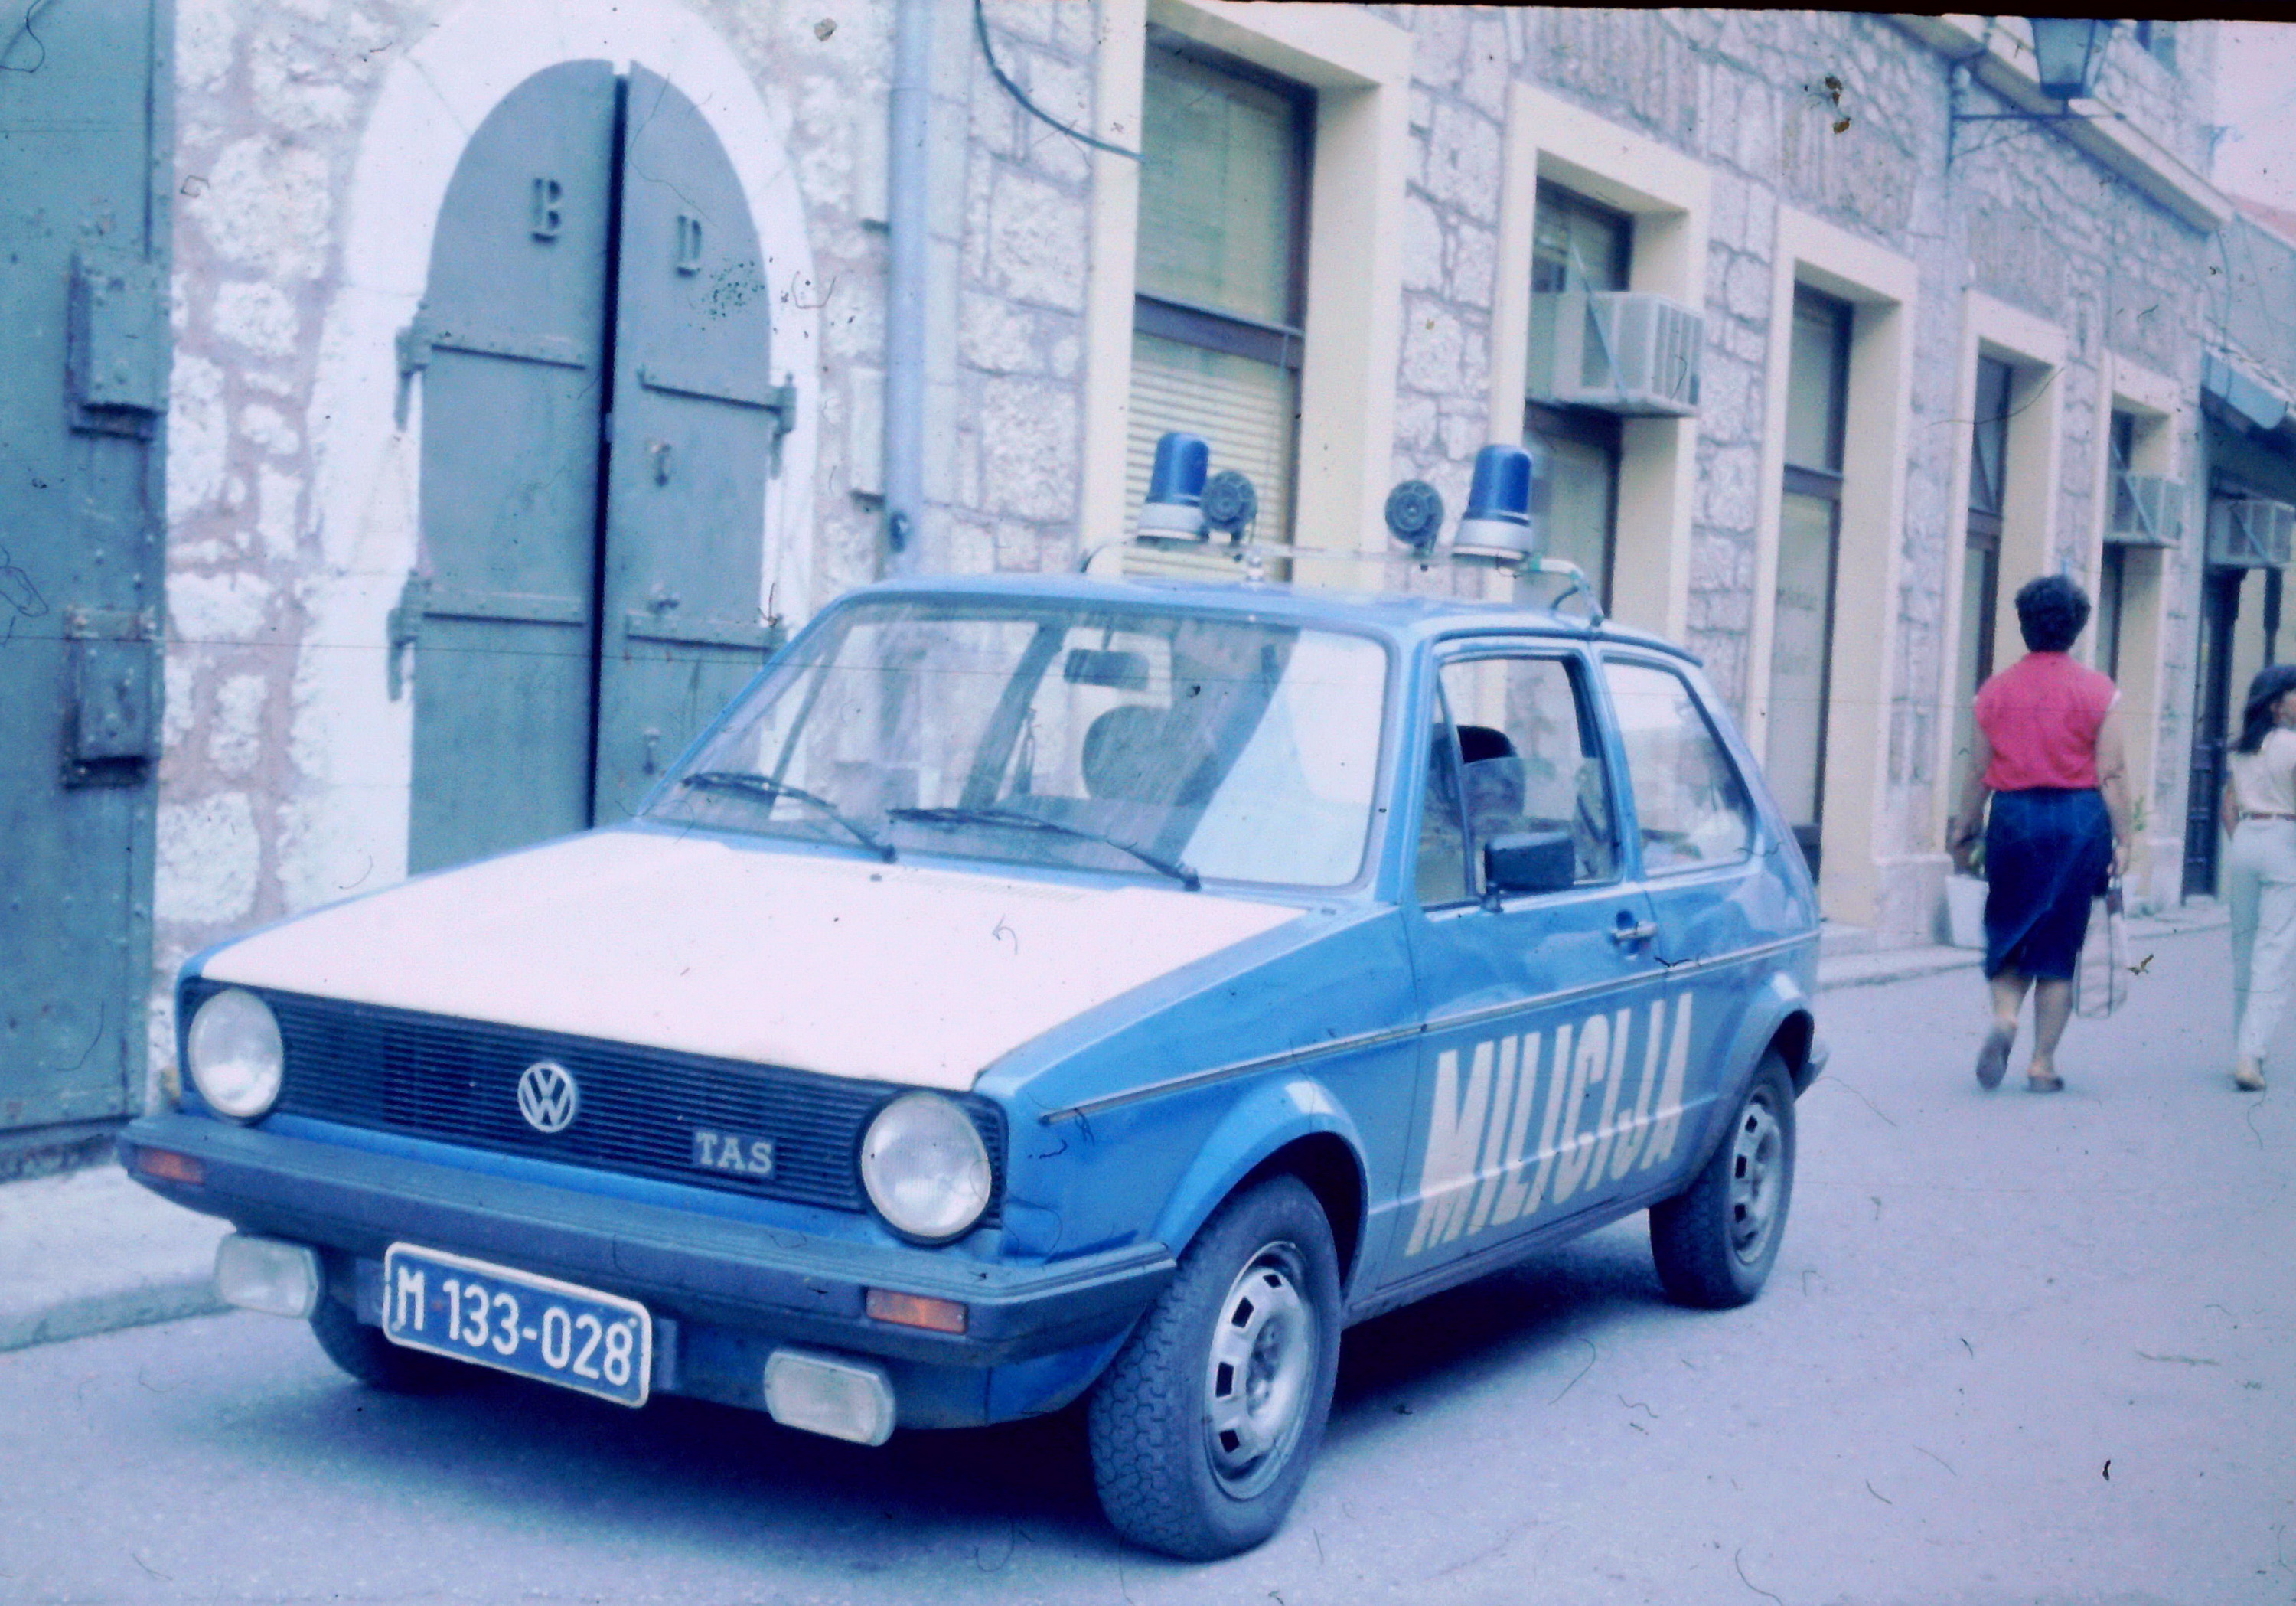 Volkswagen golf se proizvodio u TAS-u (Tvornici automobila Sarajevo) od 1976. godine i u Sarajevu je proizvedeno 150 tisuća automobila. Golf je bio naročito popularan u Jugoslaviji, pogotovo Golf dvojka koja se počela proizvoditi 1985.